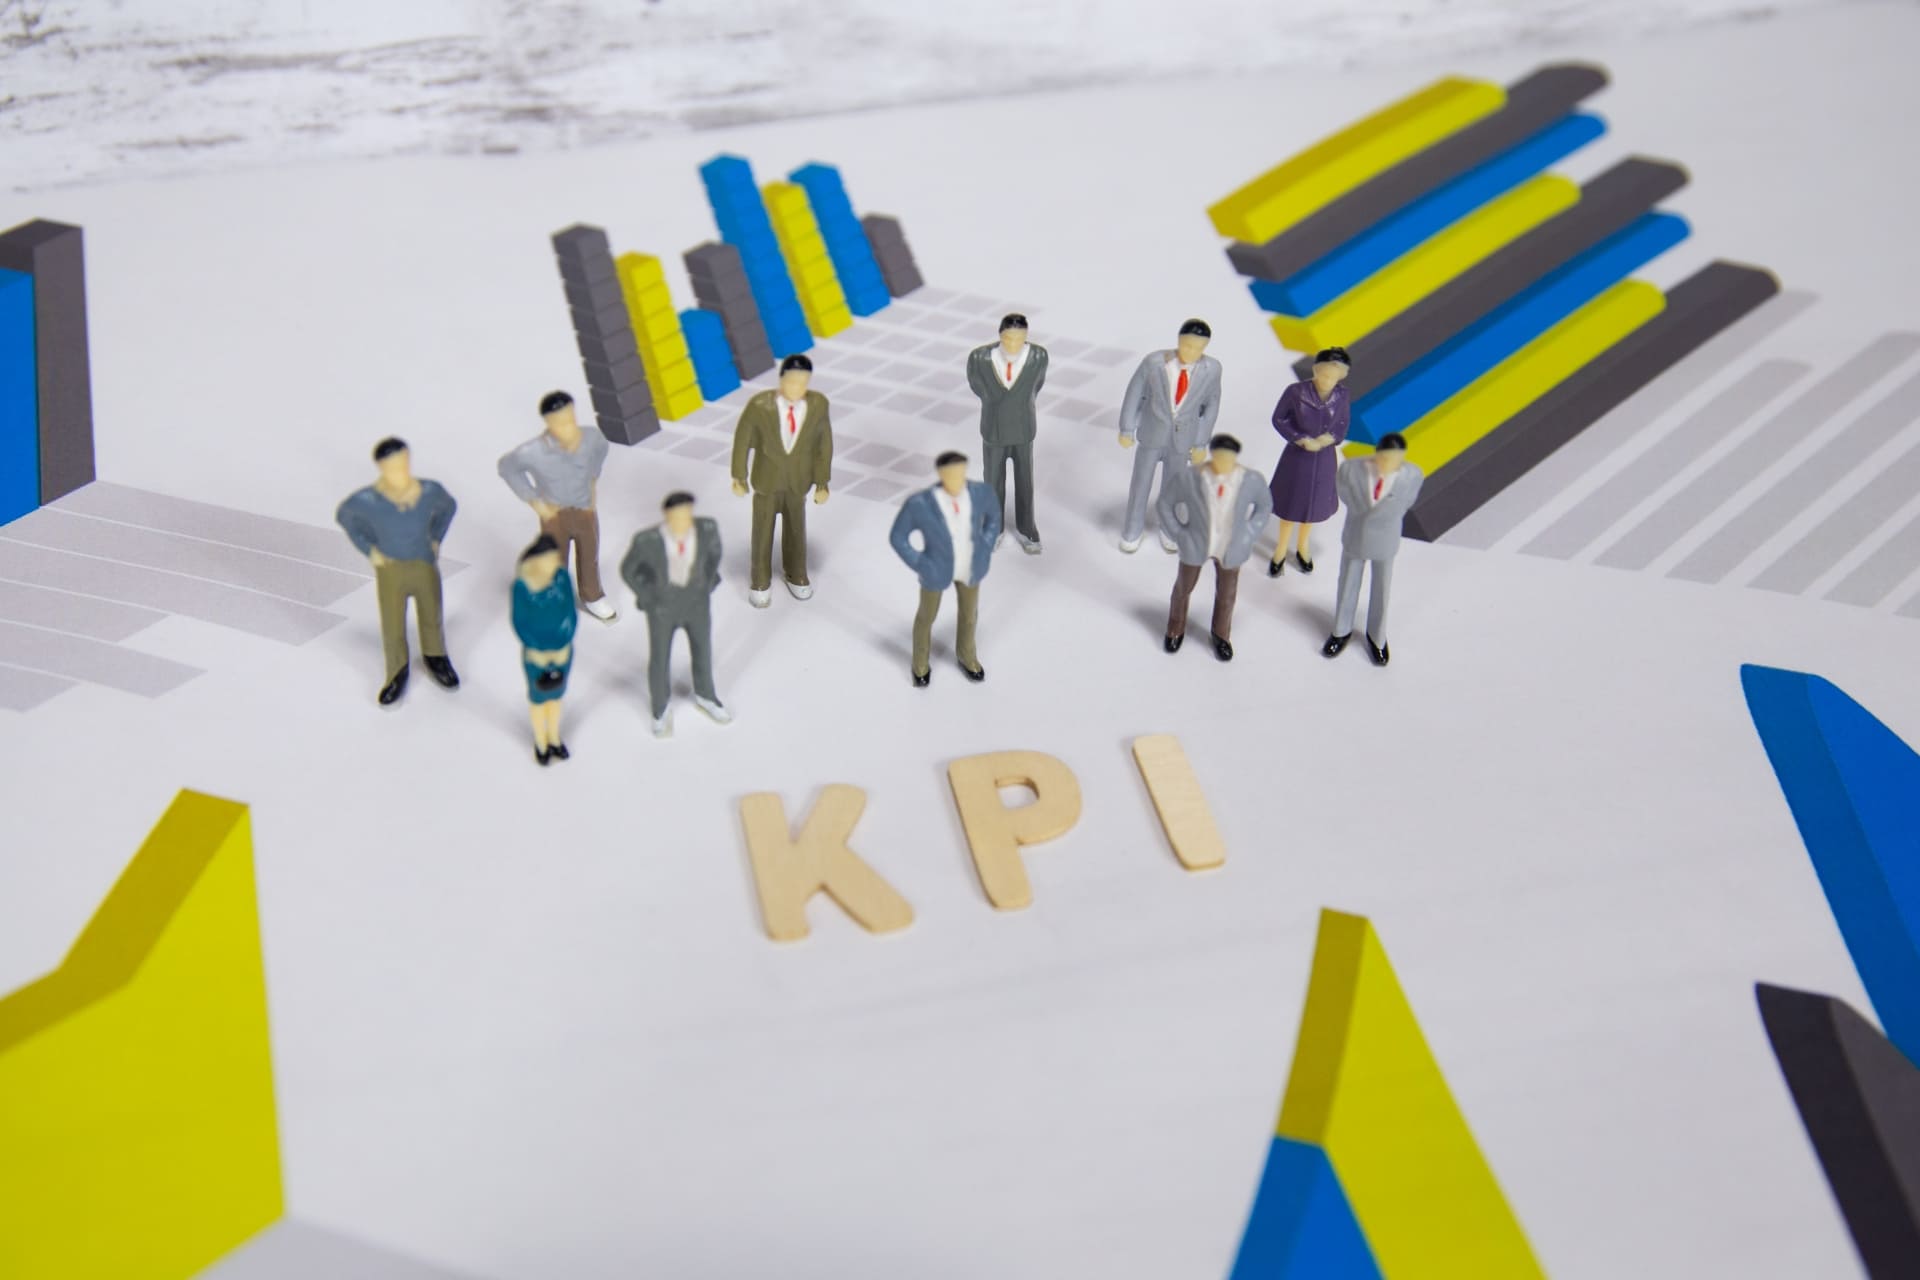 採用KPIについて考える従業員